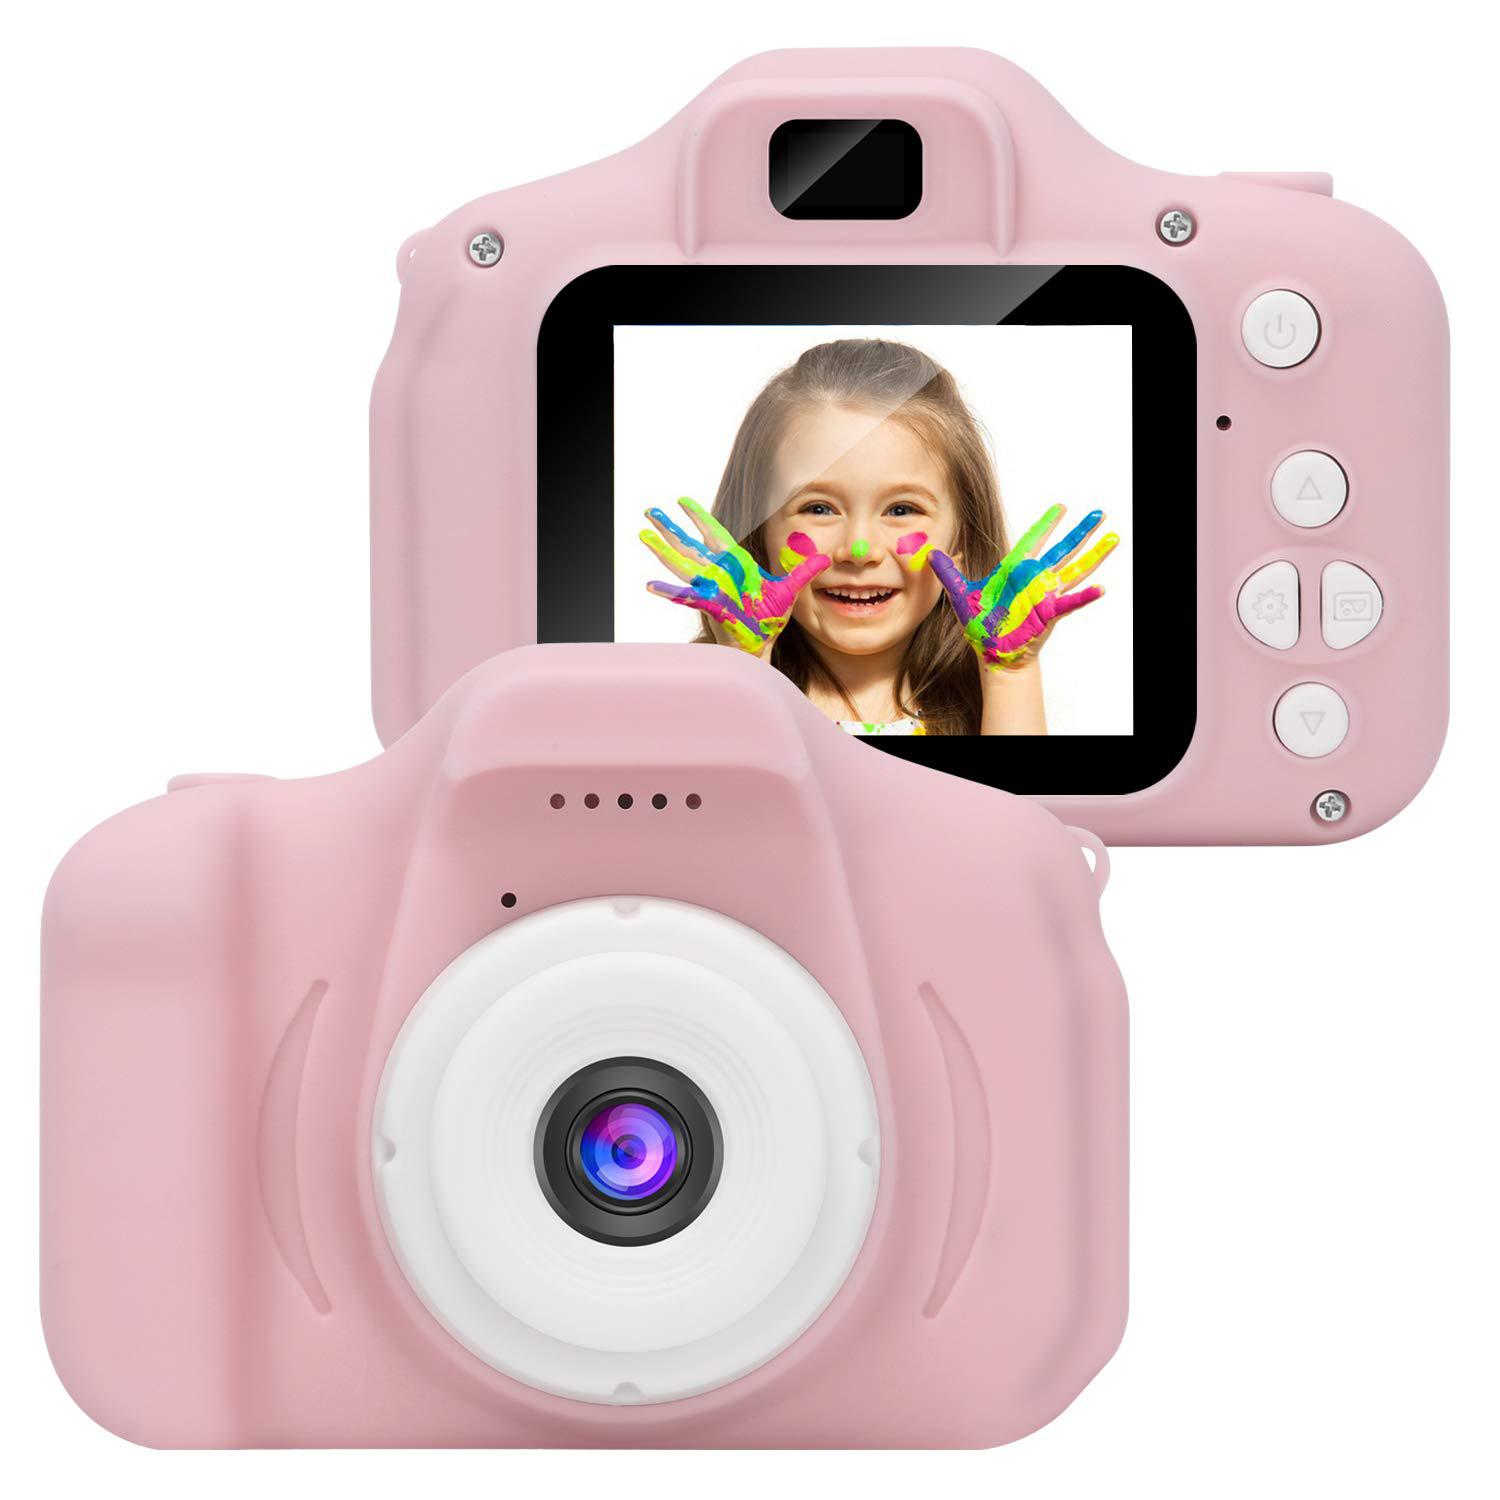 กล้องเด็ก กล้องถ่ายรูปเด็ก เด็กกล้องวิดีโอดิจิตอลมินิแบบชาร์จเด็กกล้องกันกระแทก 8MP HDของเล่นกล้องเด็กกล้องวีดีโอ